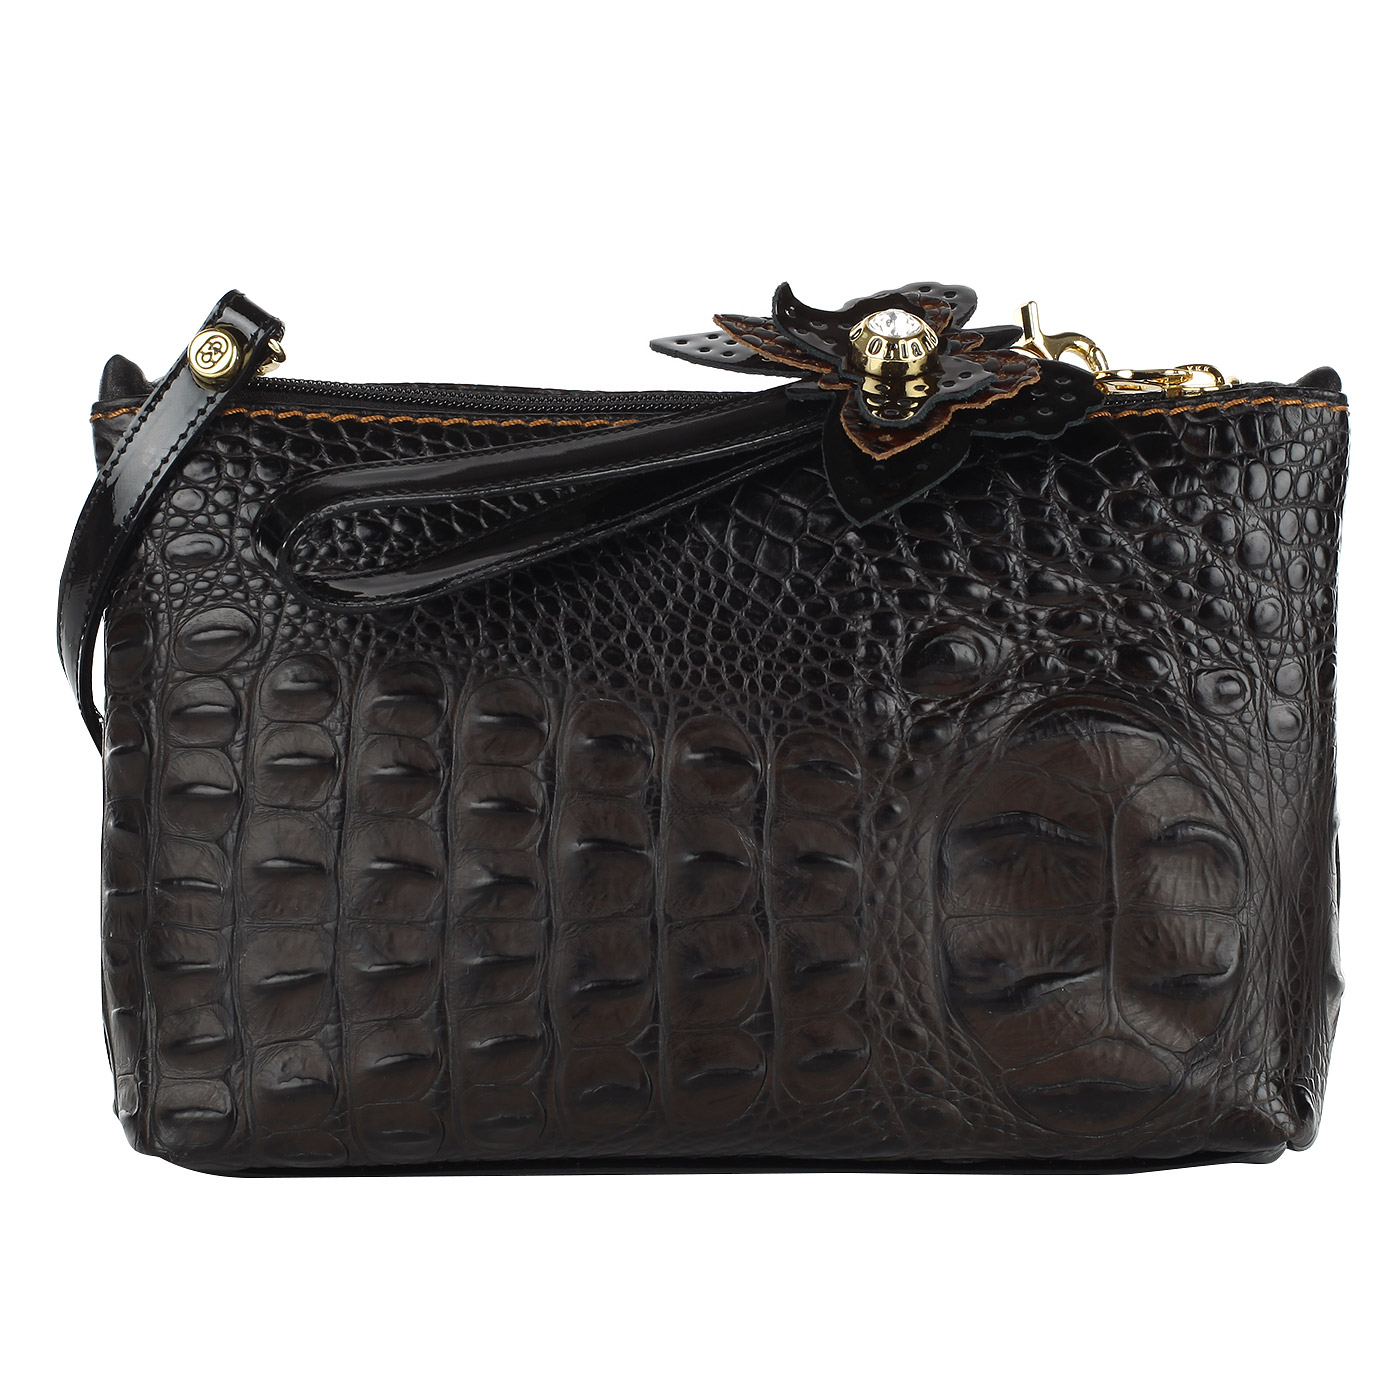 Marino Orlandi Женская сумочка с отделкой под крокодиловую кожу